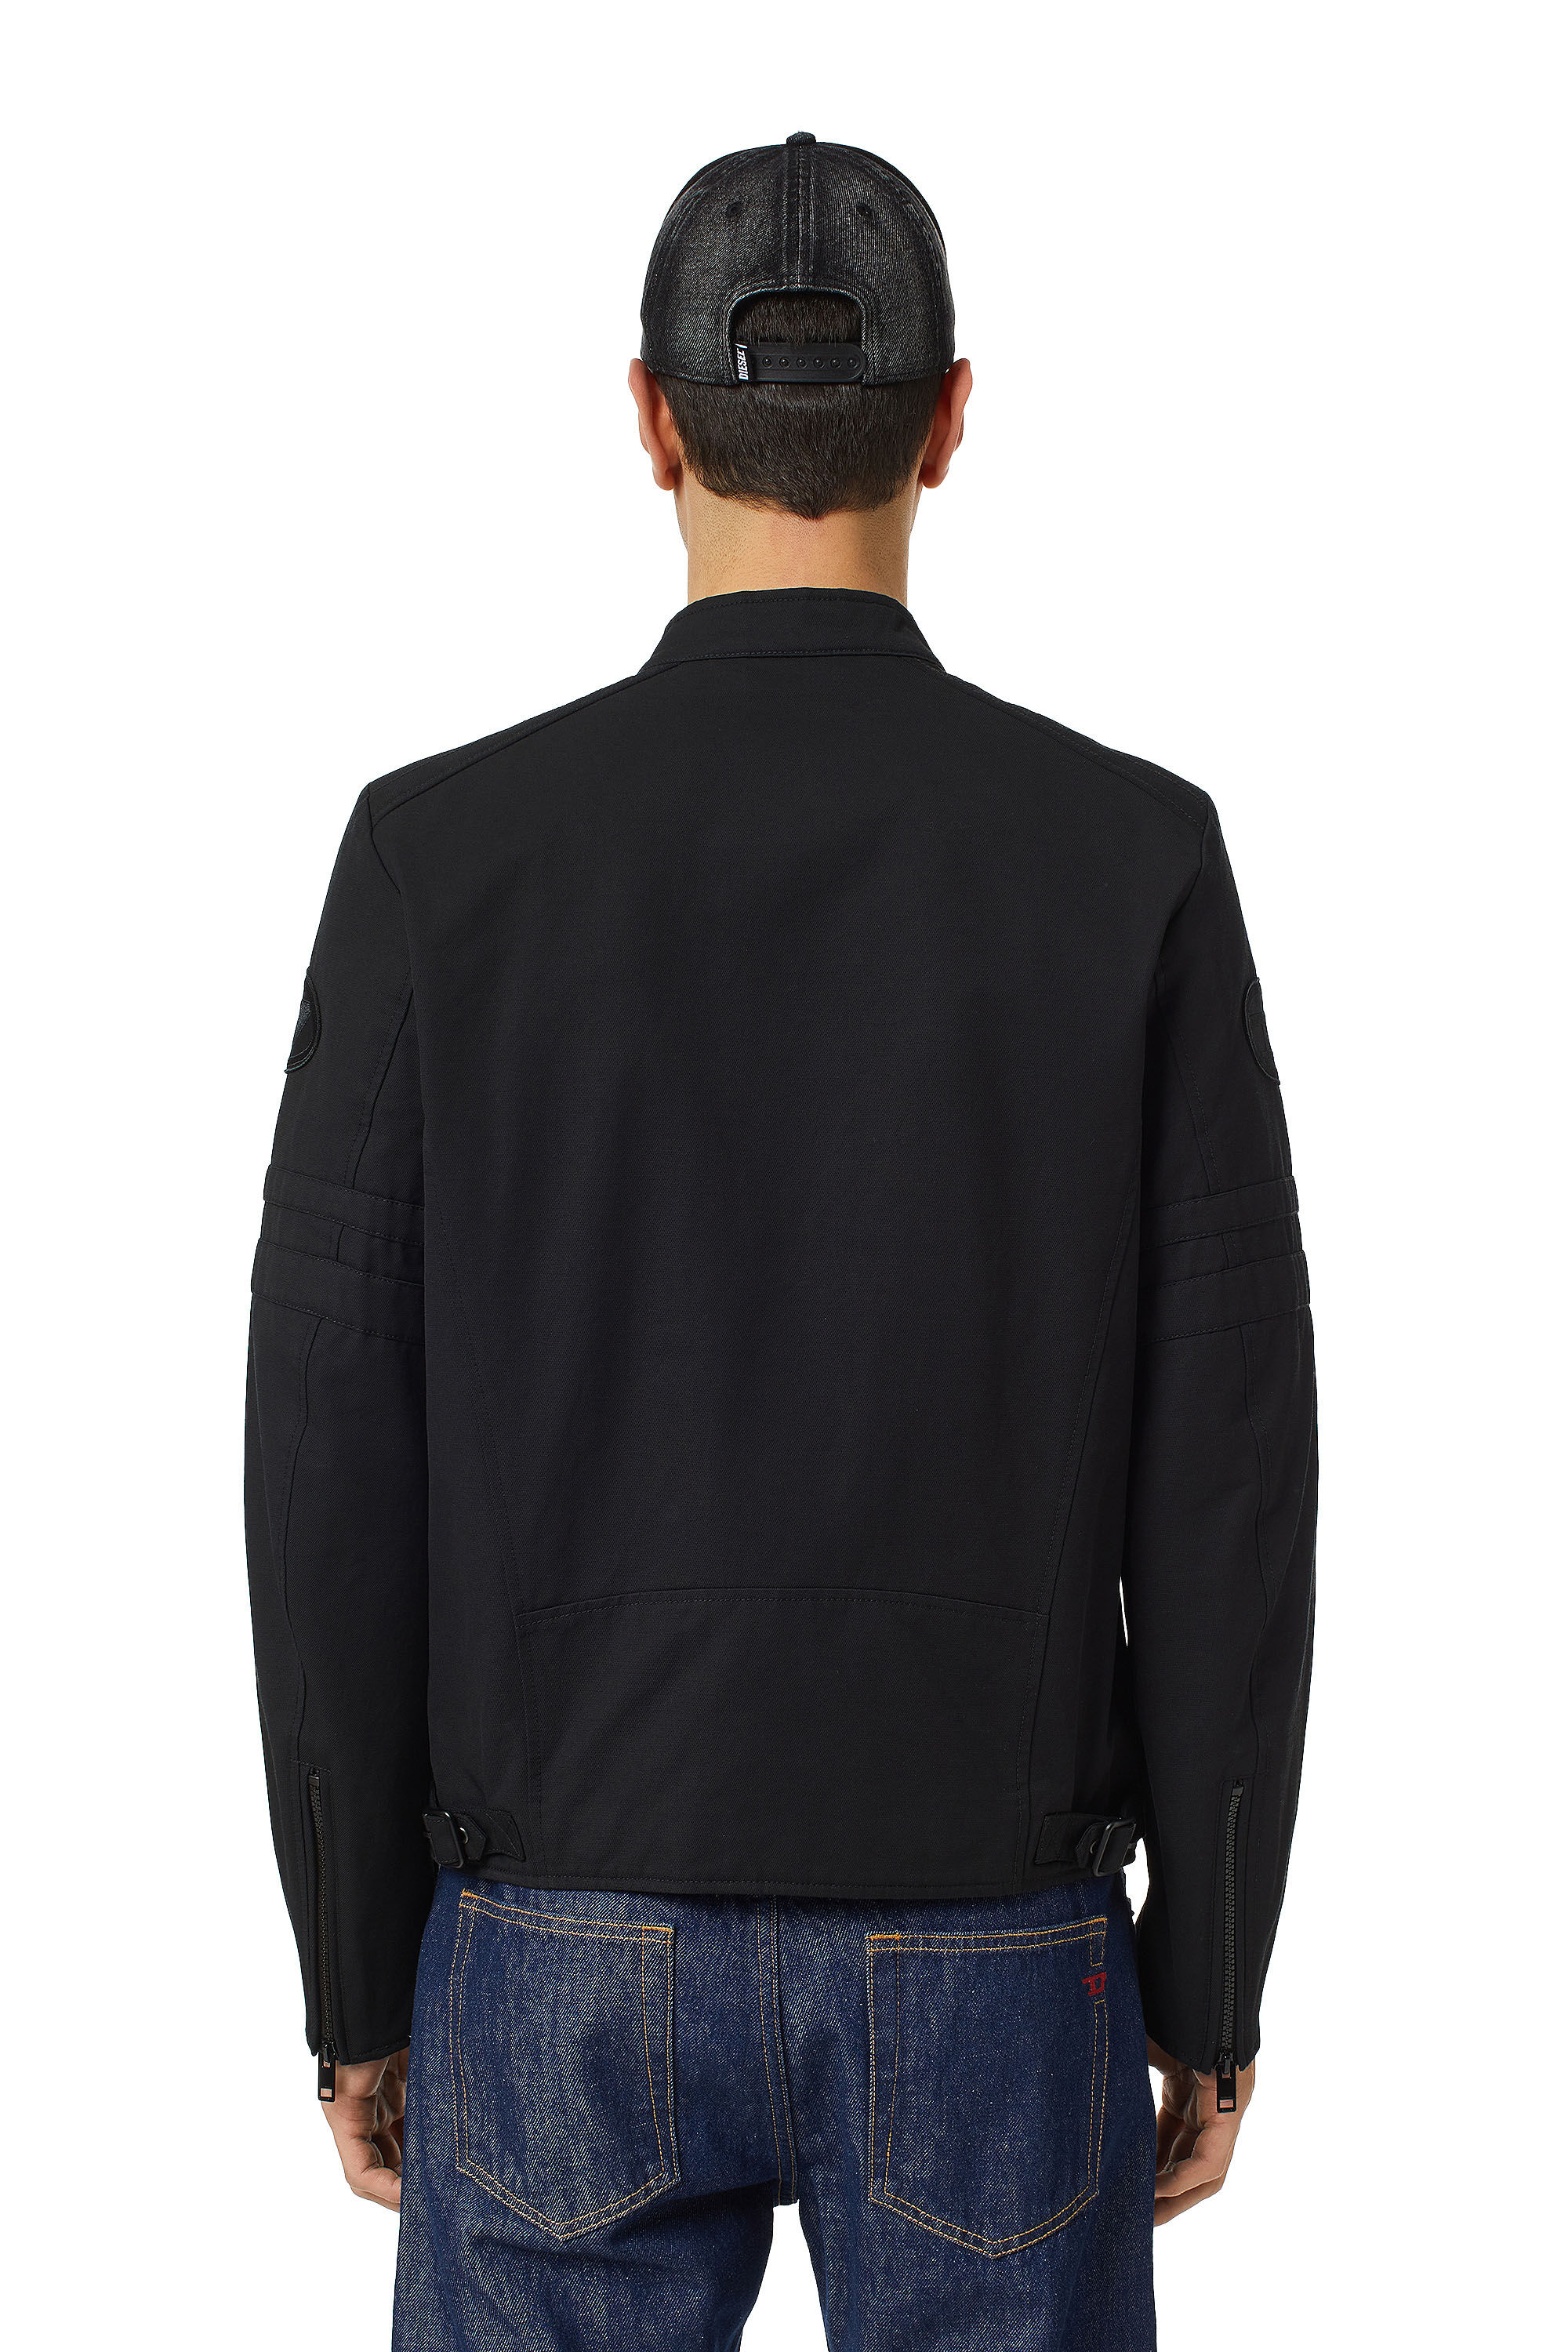 J-GLORY-CL Man: Biker jacket twill | in textured Diesel cotton